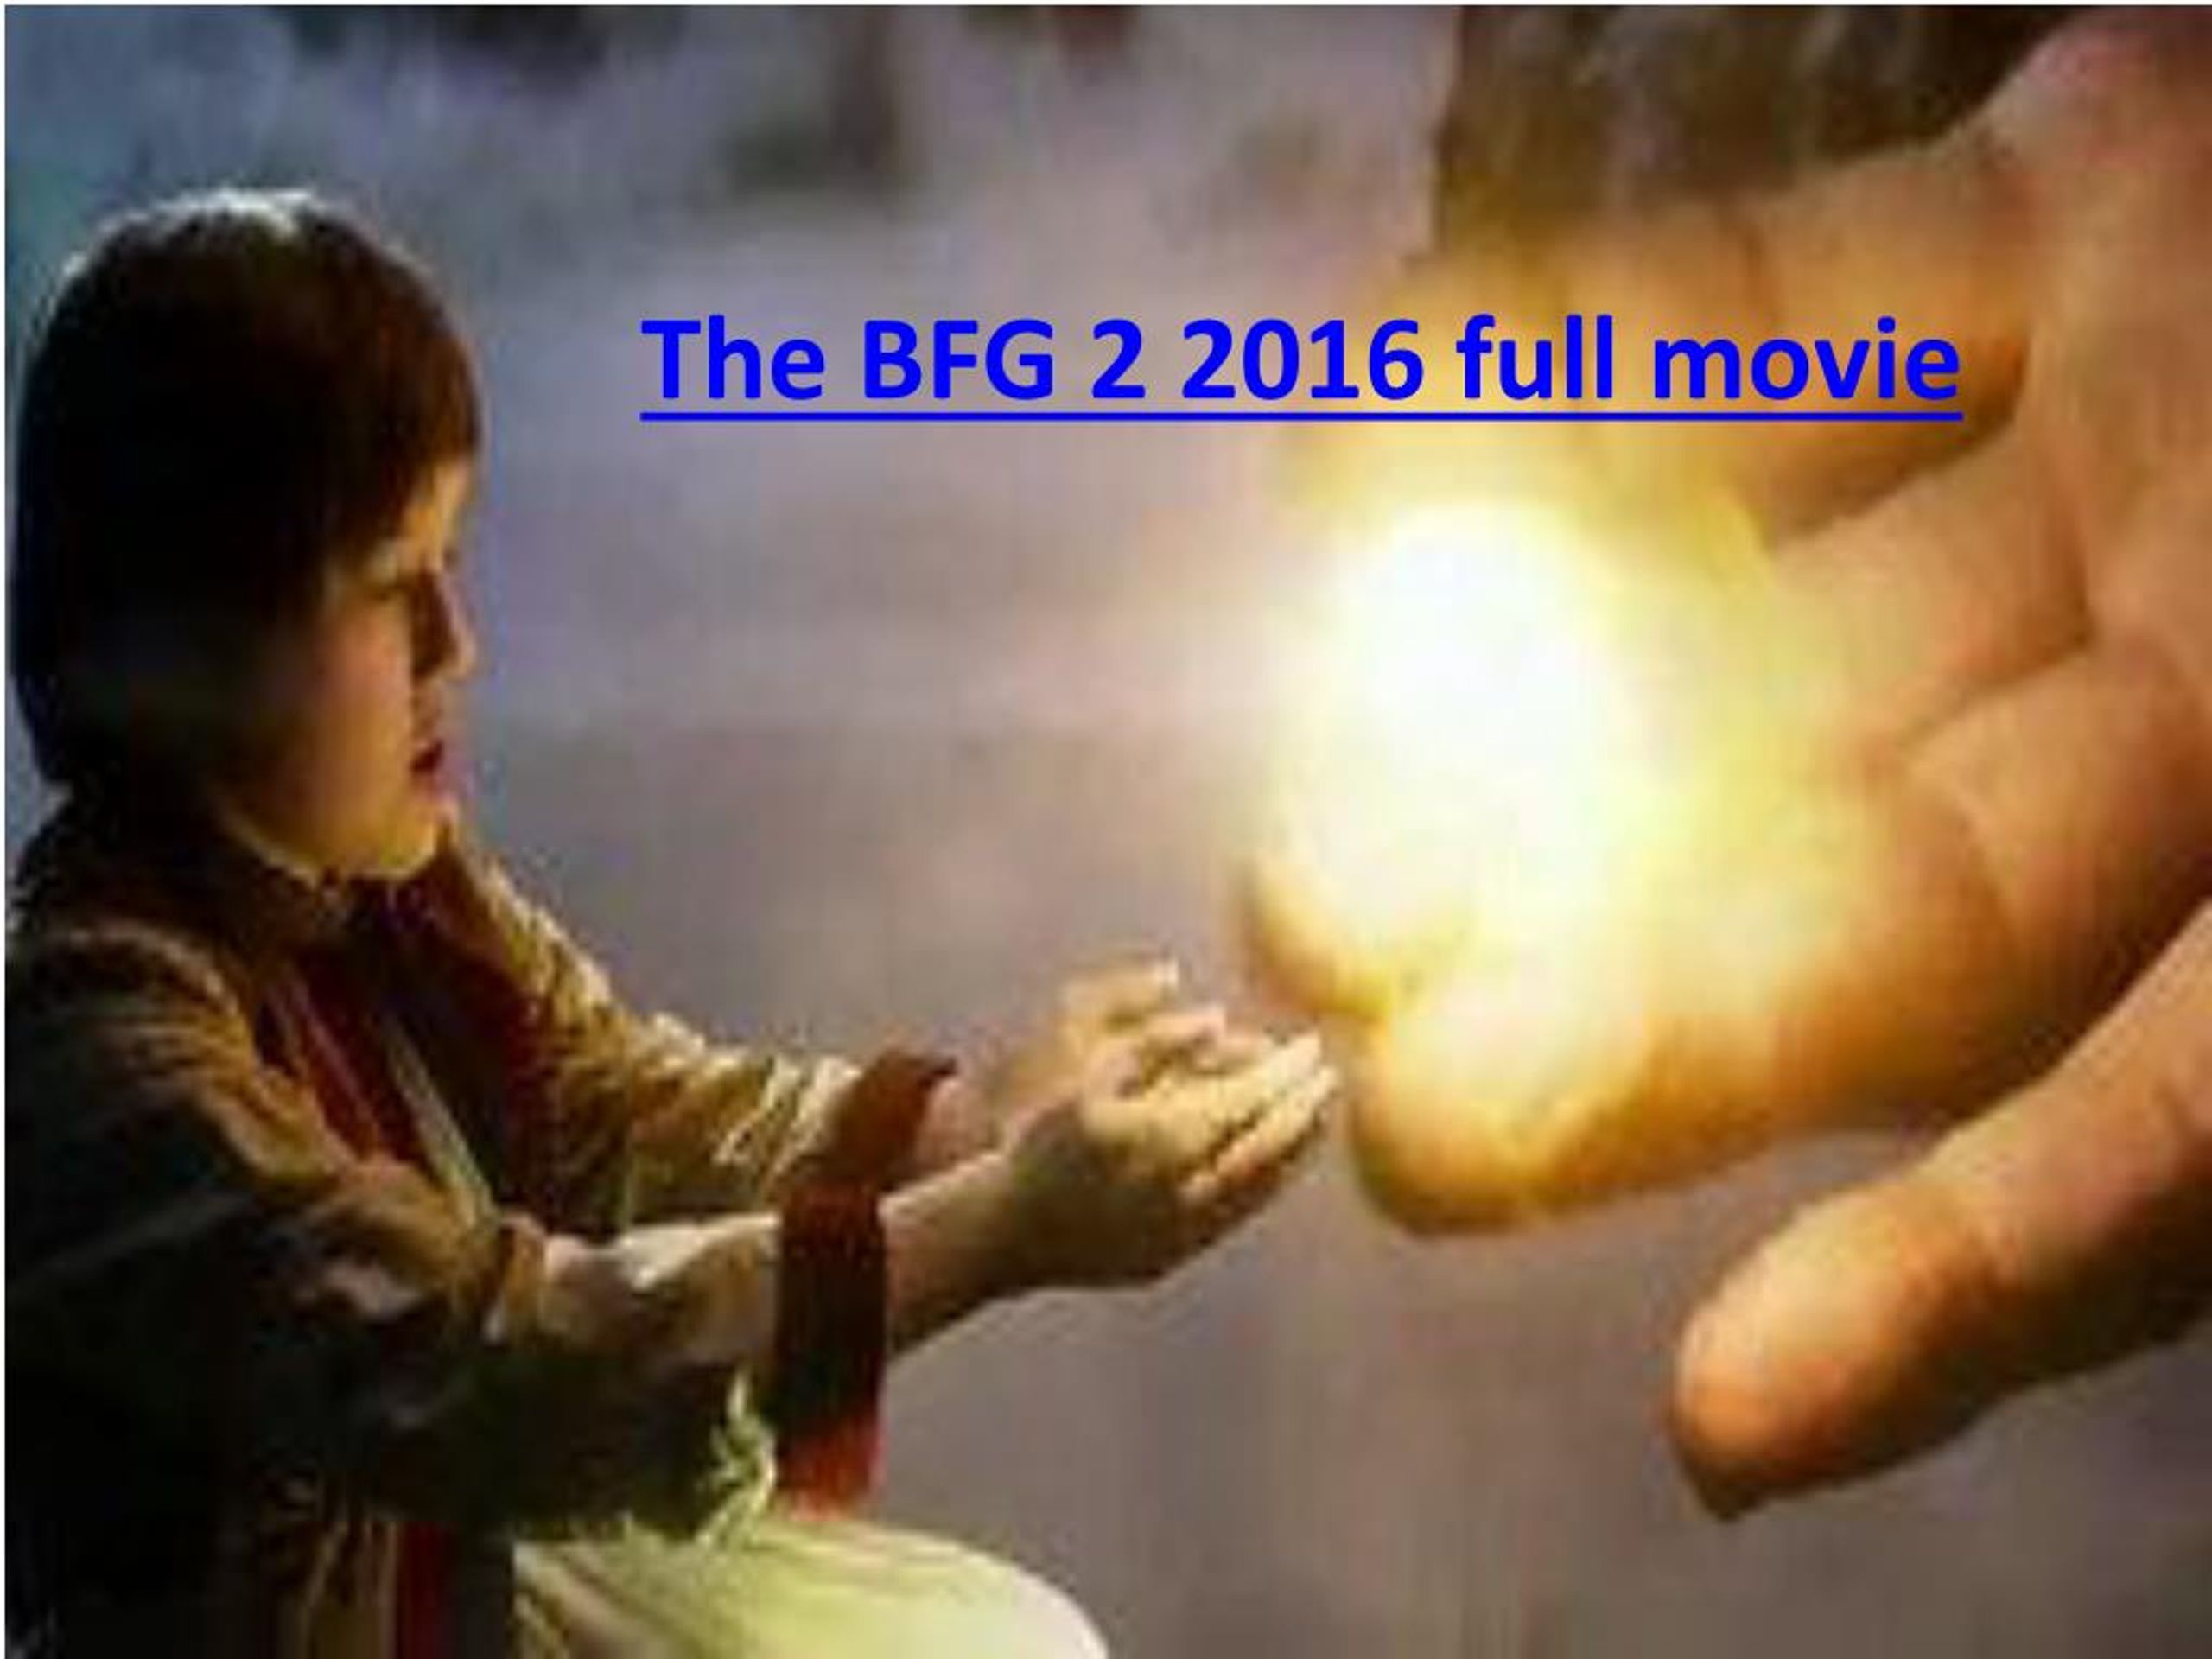 Ppt The Bfg 2 2016 Full Movie Powerpoint Presentation Free